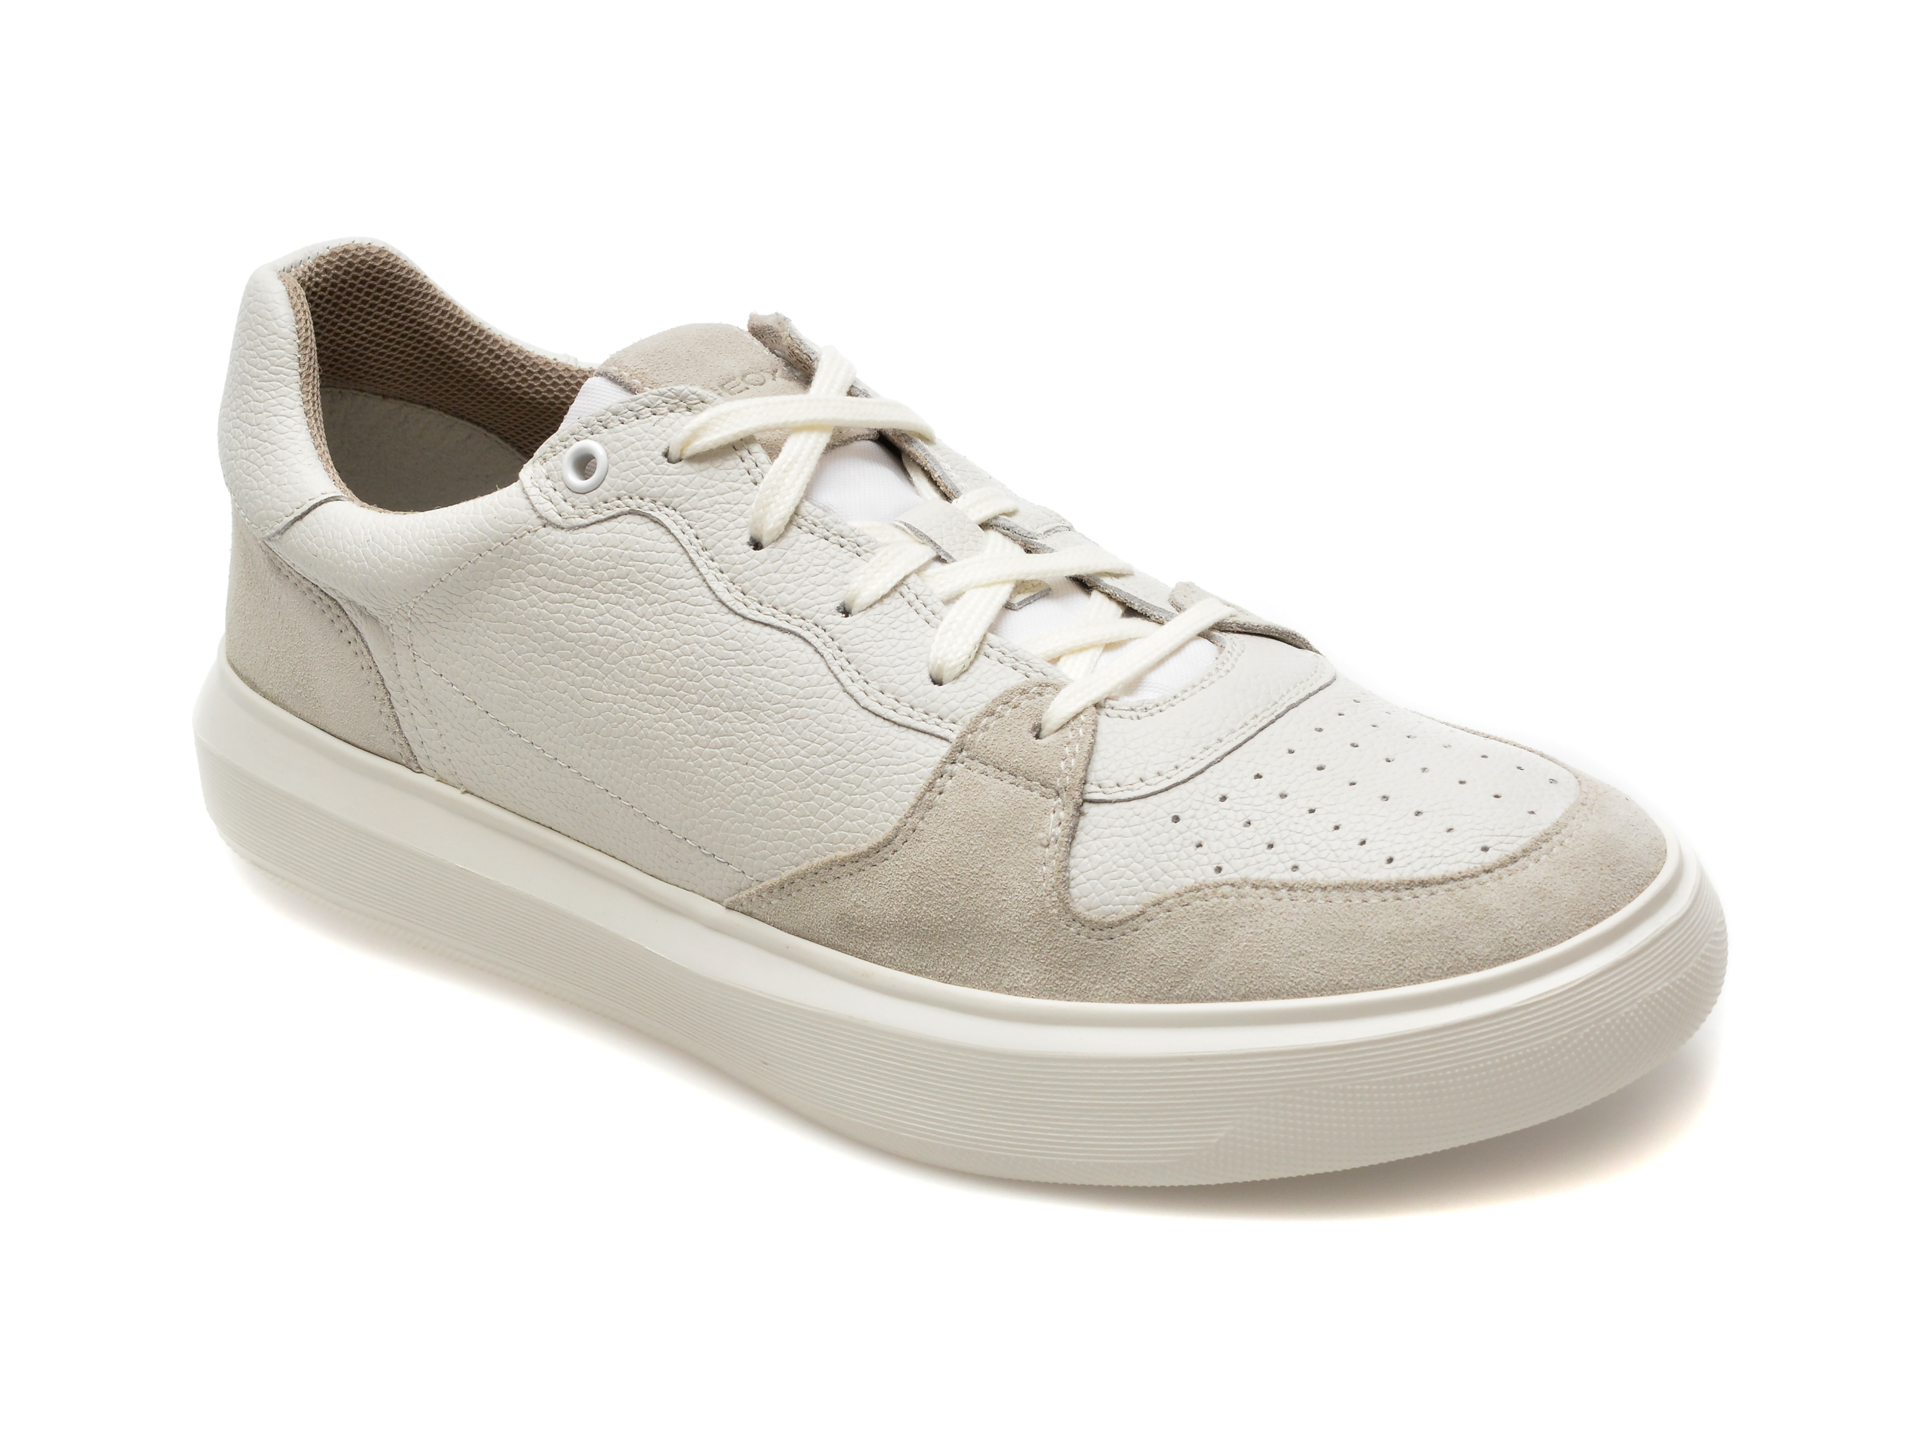 Pantofi casual GEOX albi, U455WB, din piele naturala